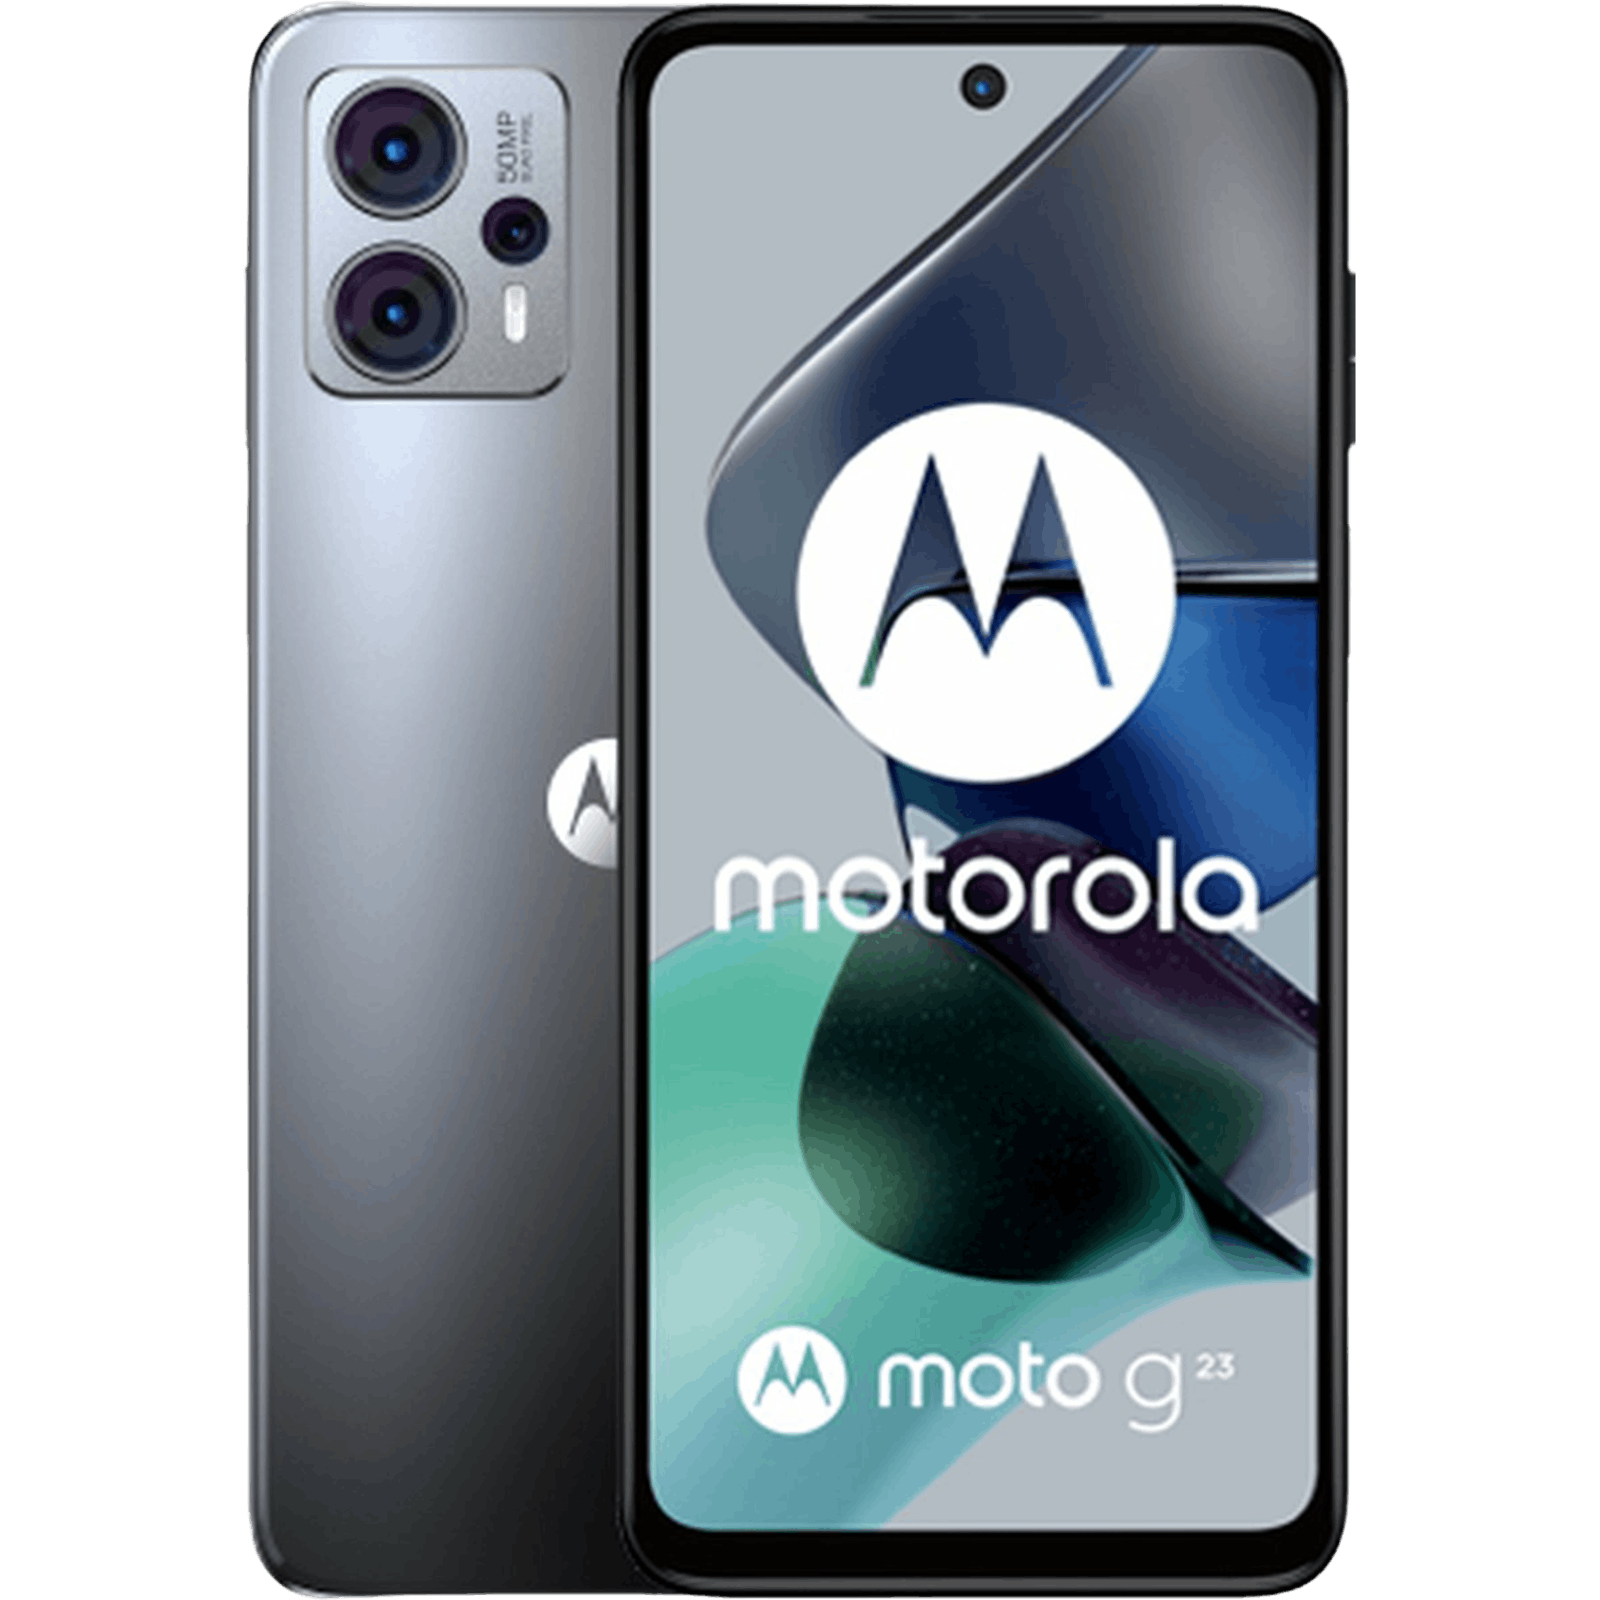 Beperken Mededogen Benodigdheden Motorola Moto G23 kopen | Los of met abonnement - Mobiel.nl